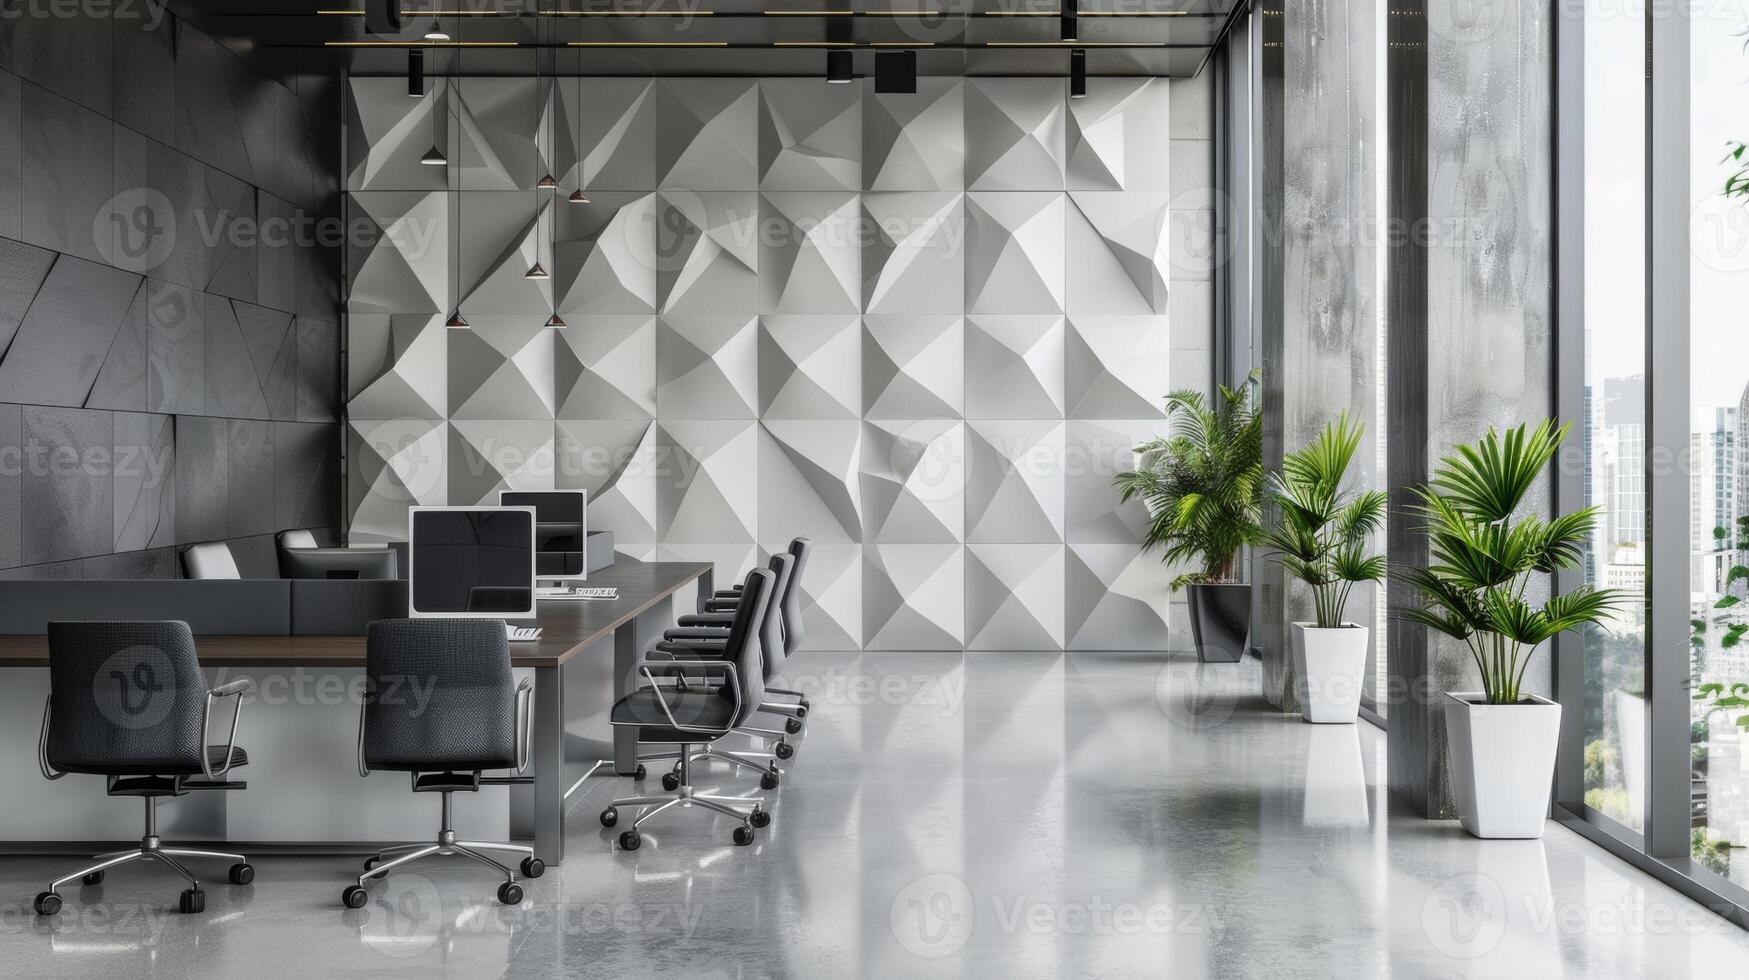 een monochromatisch meetkundig keramisch muur installatie toevoegen structuur en diepte naar een strak kantoor ruimte. foto